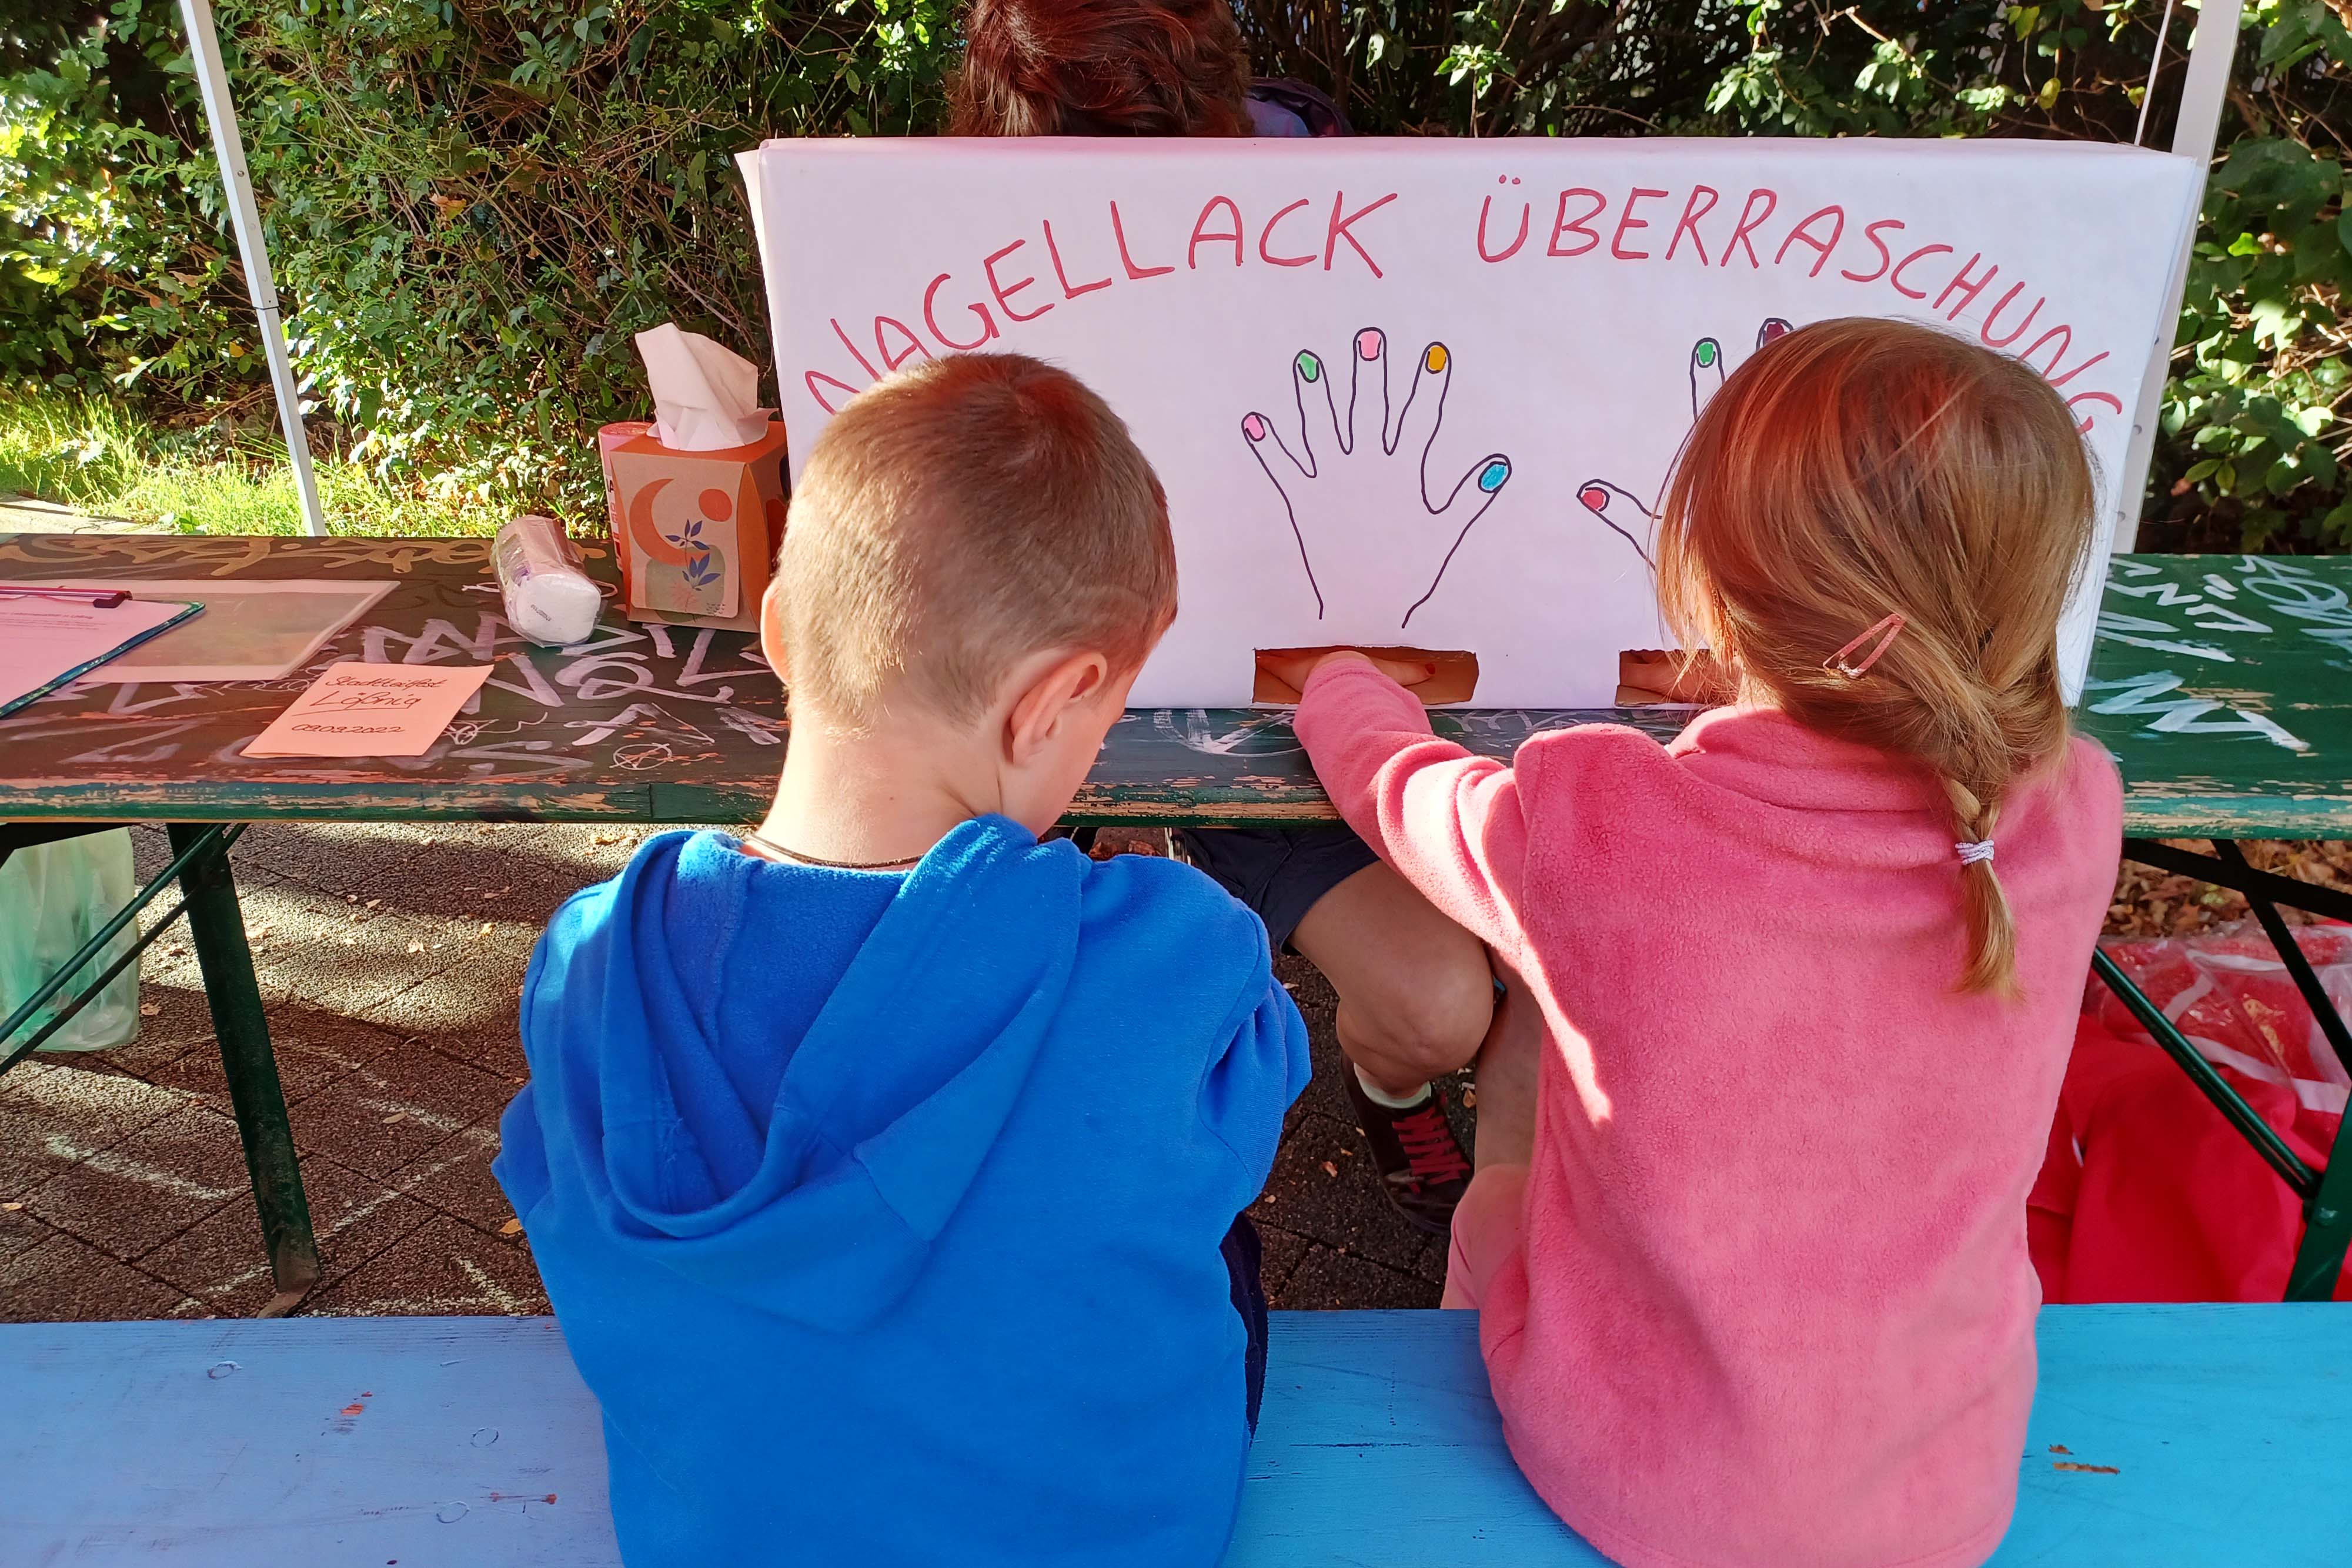 Zwei Kinder sitzen vor einer "Nagellack-Überraschung" und lassen sich die Finger lackieren.